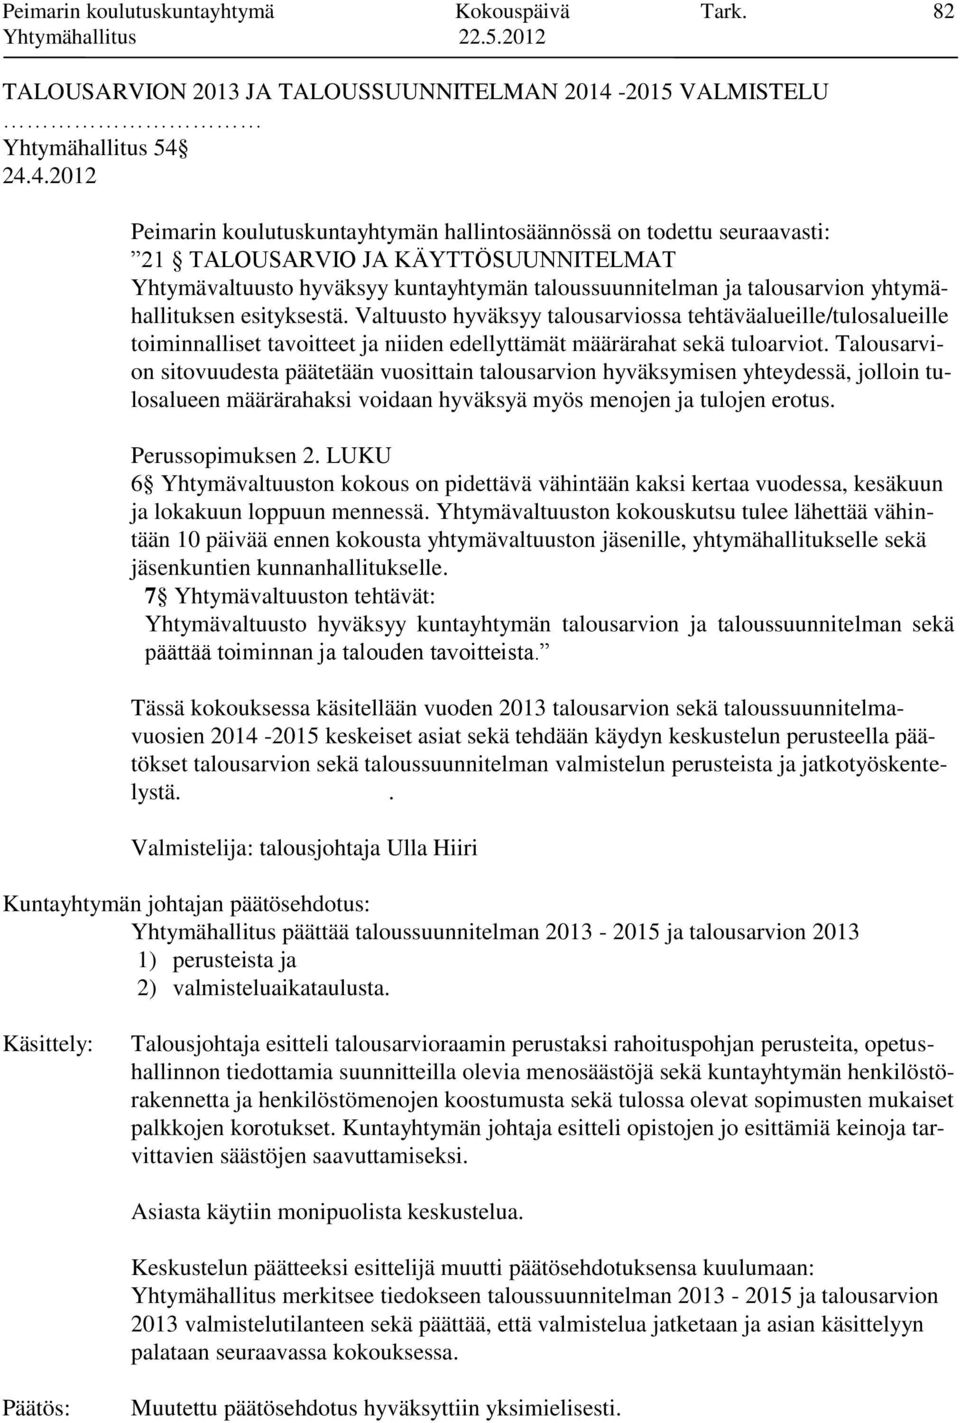 24.4.2012 Peimarin koulutuskuntayhtymän hallintosäännössä on todettu seuraavasti: 21 TALOUSARVIO JA KÄYTTÖSUUNNITELMAT Yhtymävaltuusto hyväksyy kuntayhtymän taloussuunnitelman ja talousarvion